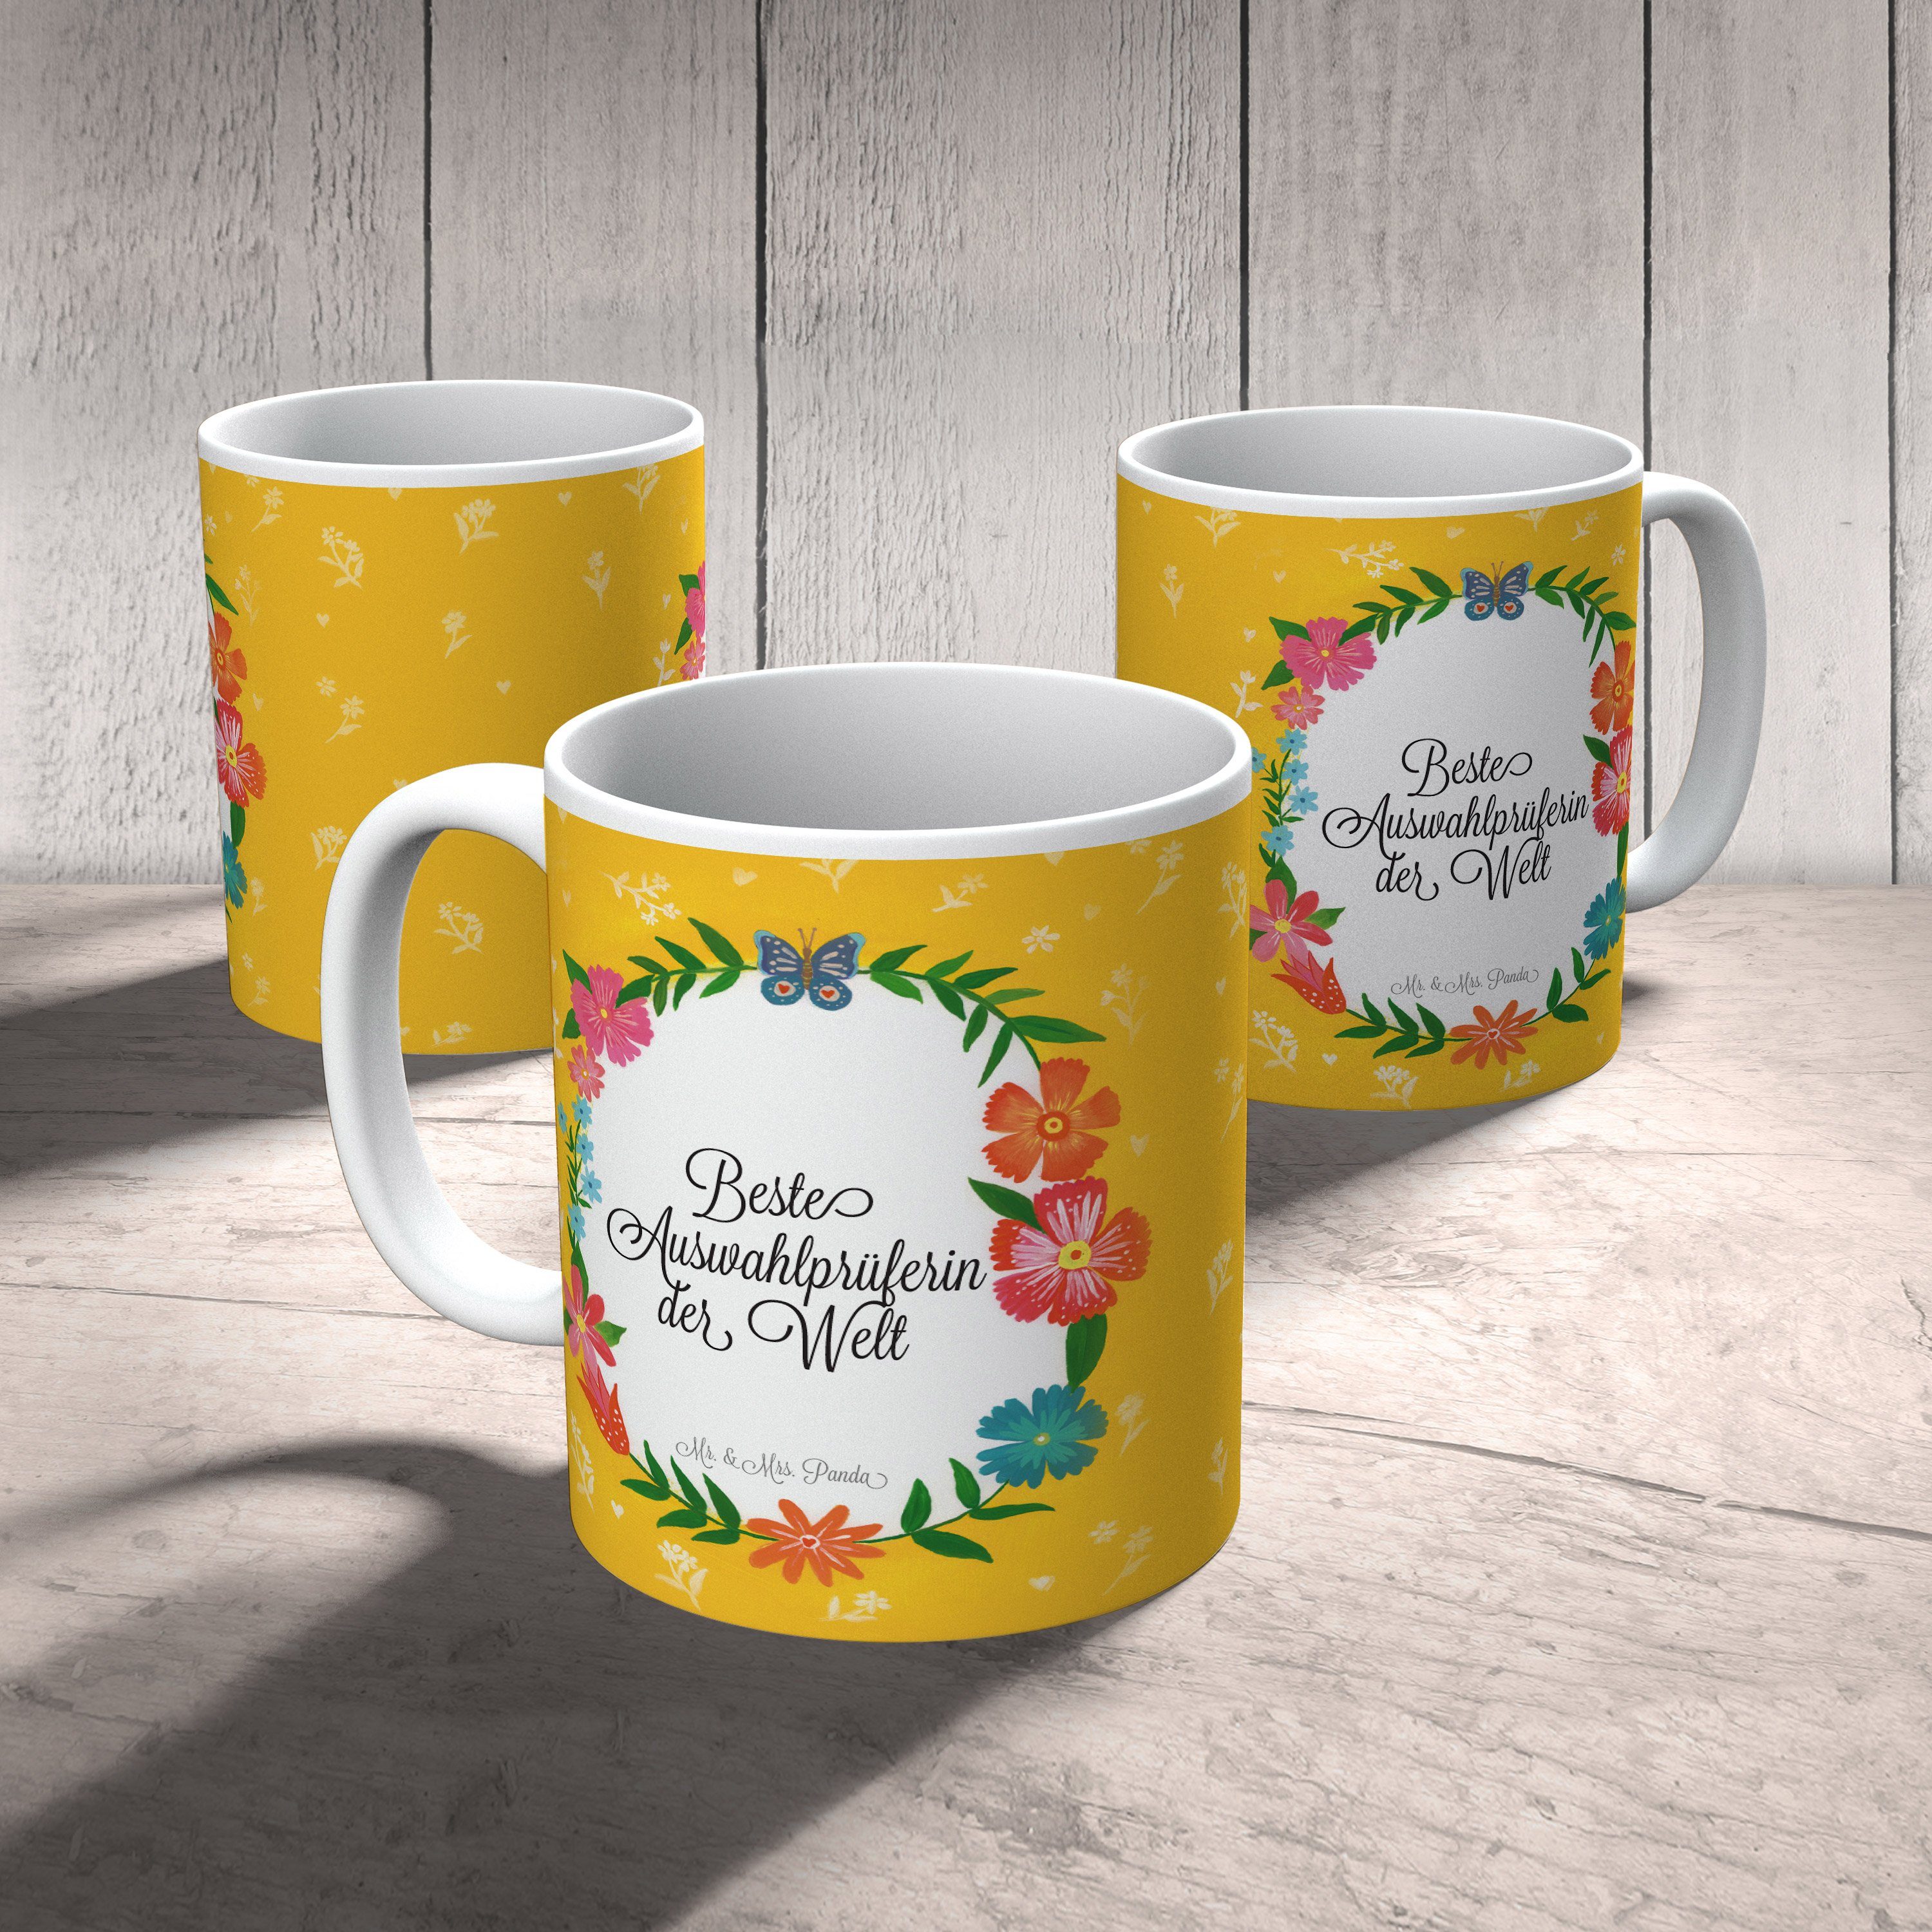 Mr. & Mrs. Panda Tasse Kaffeebecher, Tasse Geschenk, Abschied, Motive, Auswahlprüferin Tas, Keramik 